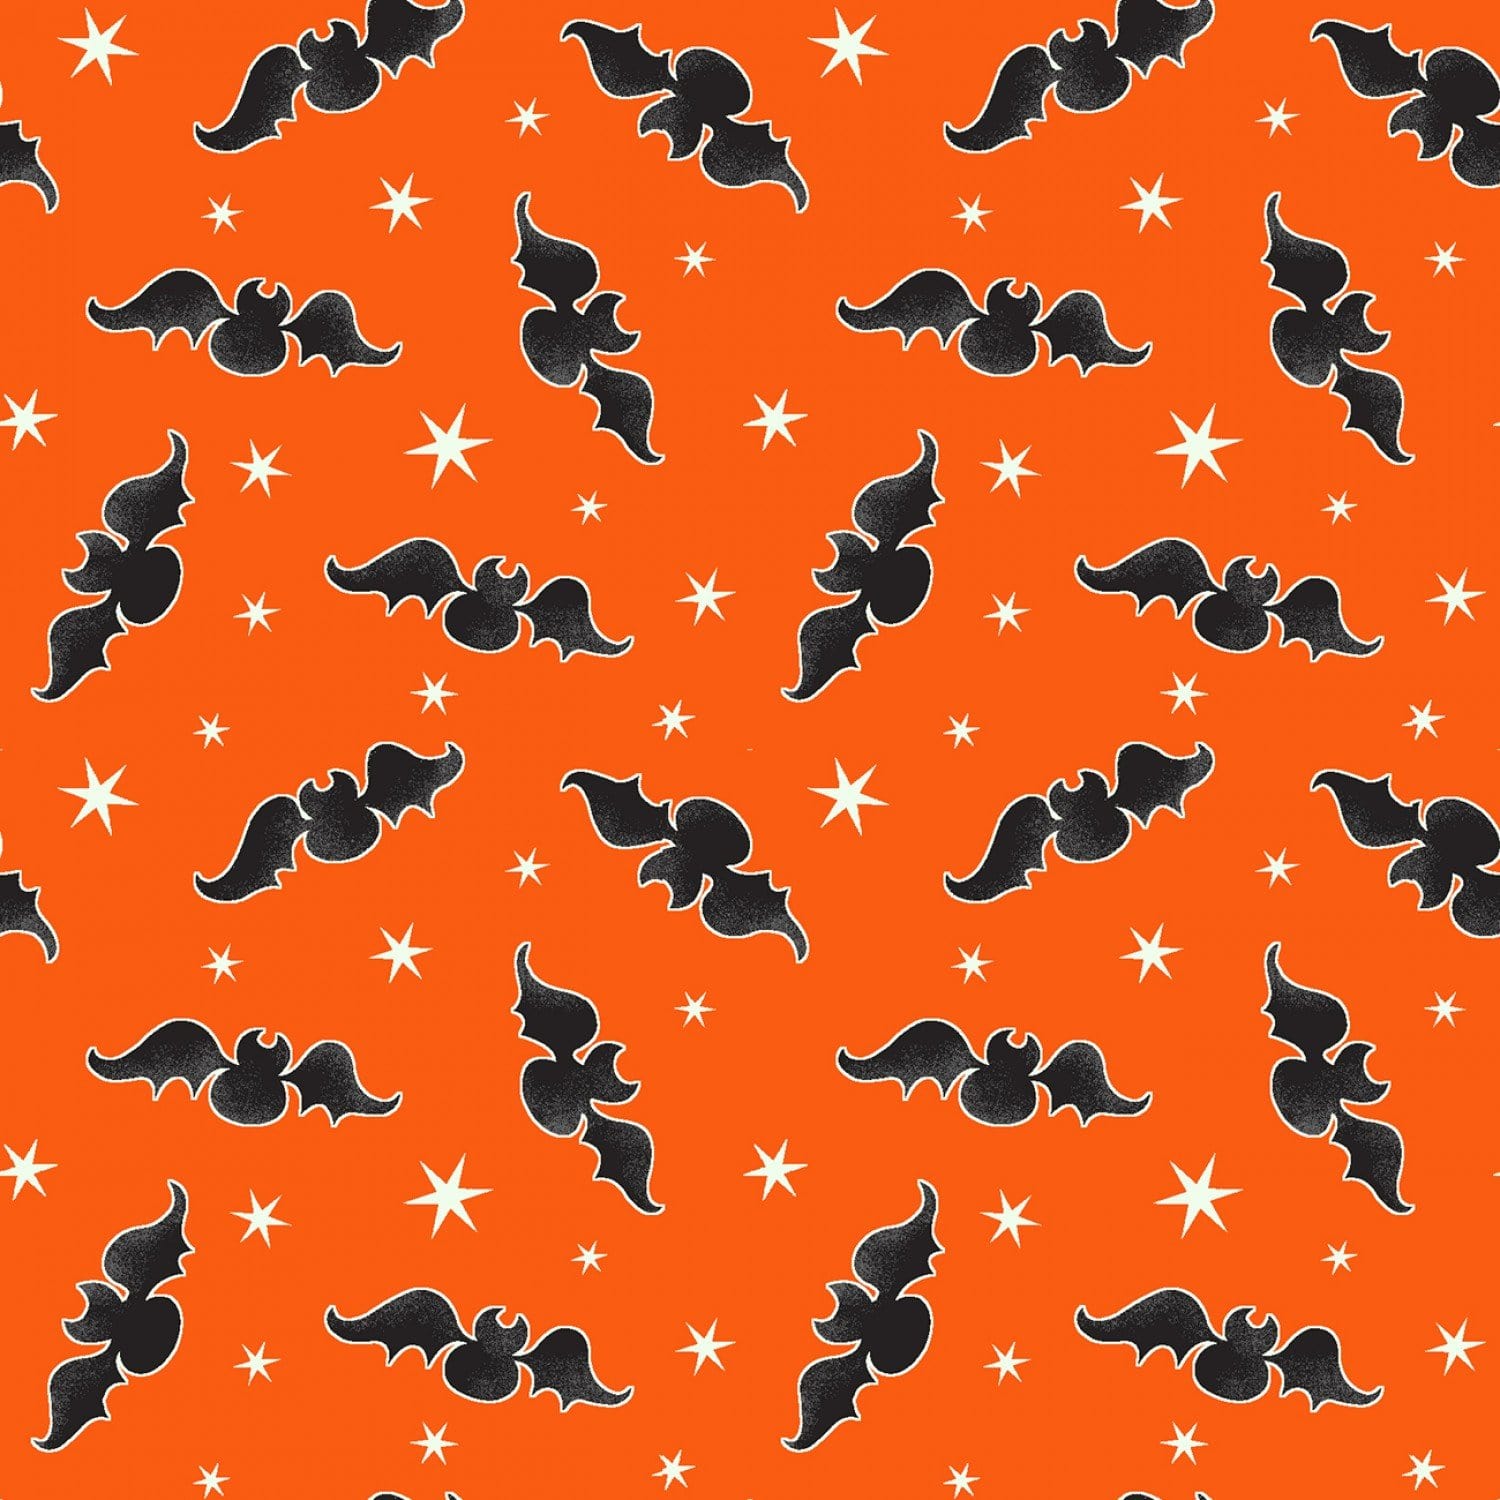 Orange Tossed Bats Glow in the Dark Fabric - 9537G-39 - Here We Glow Again - Henry Glass Fabrics - Halloween Fabrics